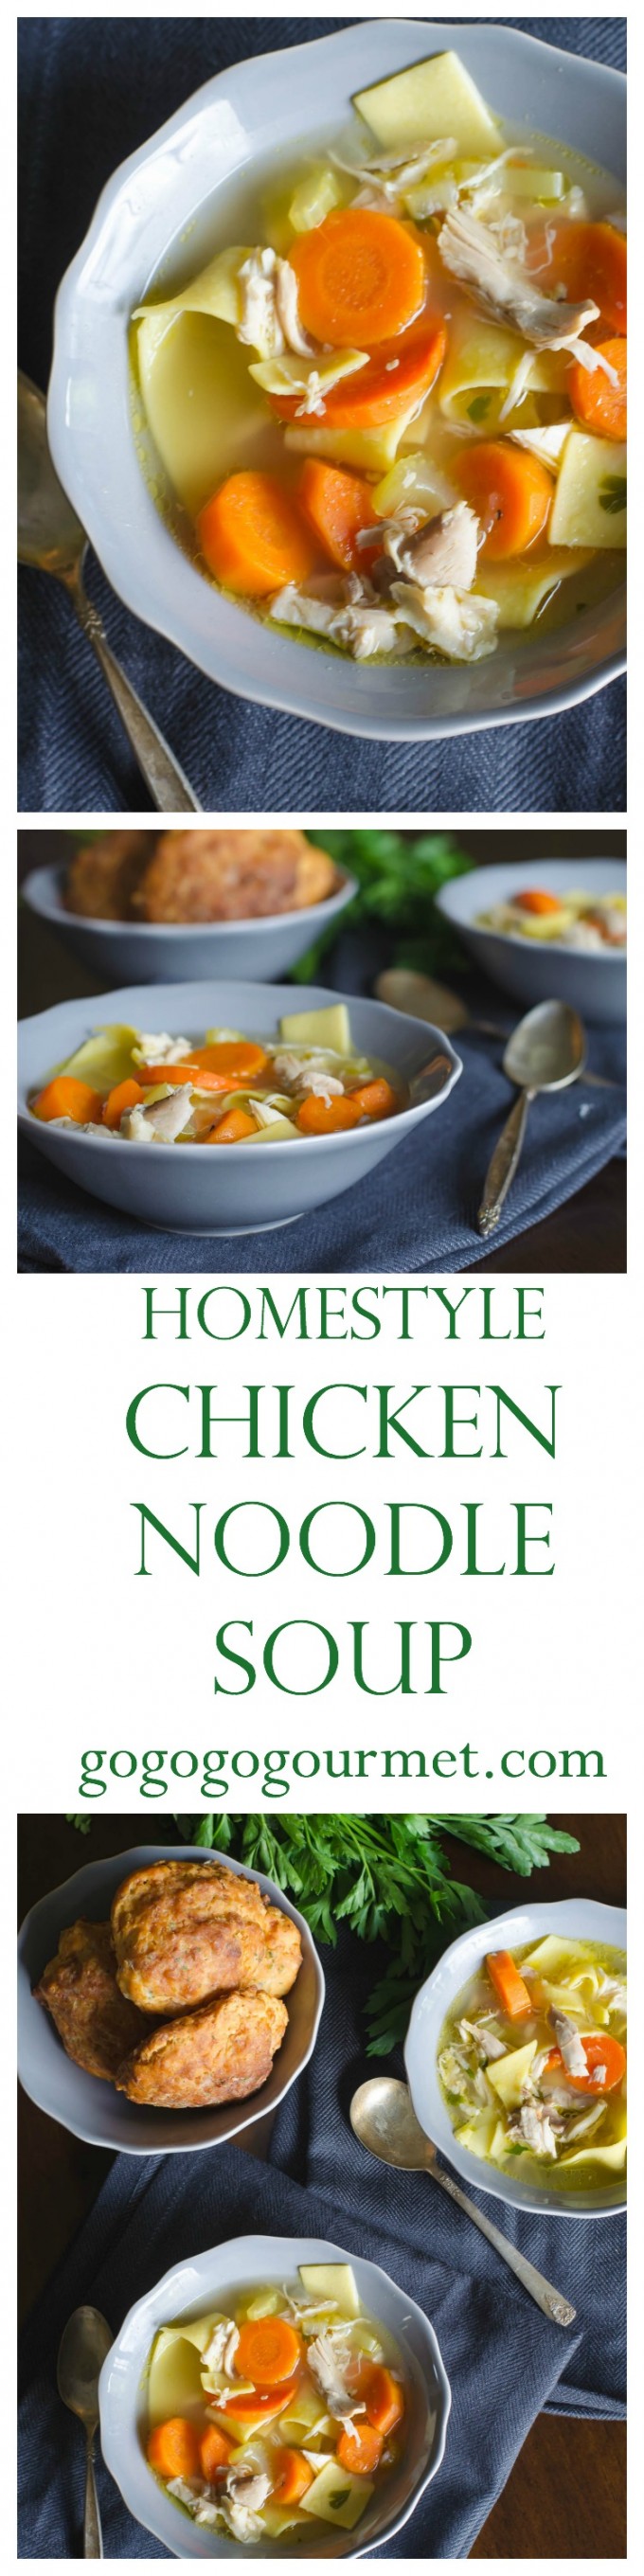 Homestyle Chicken Noodle Soup via @gogogogourmet